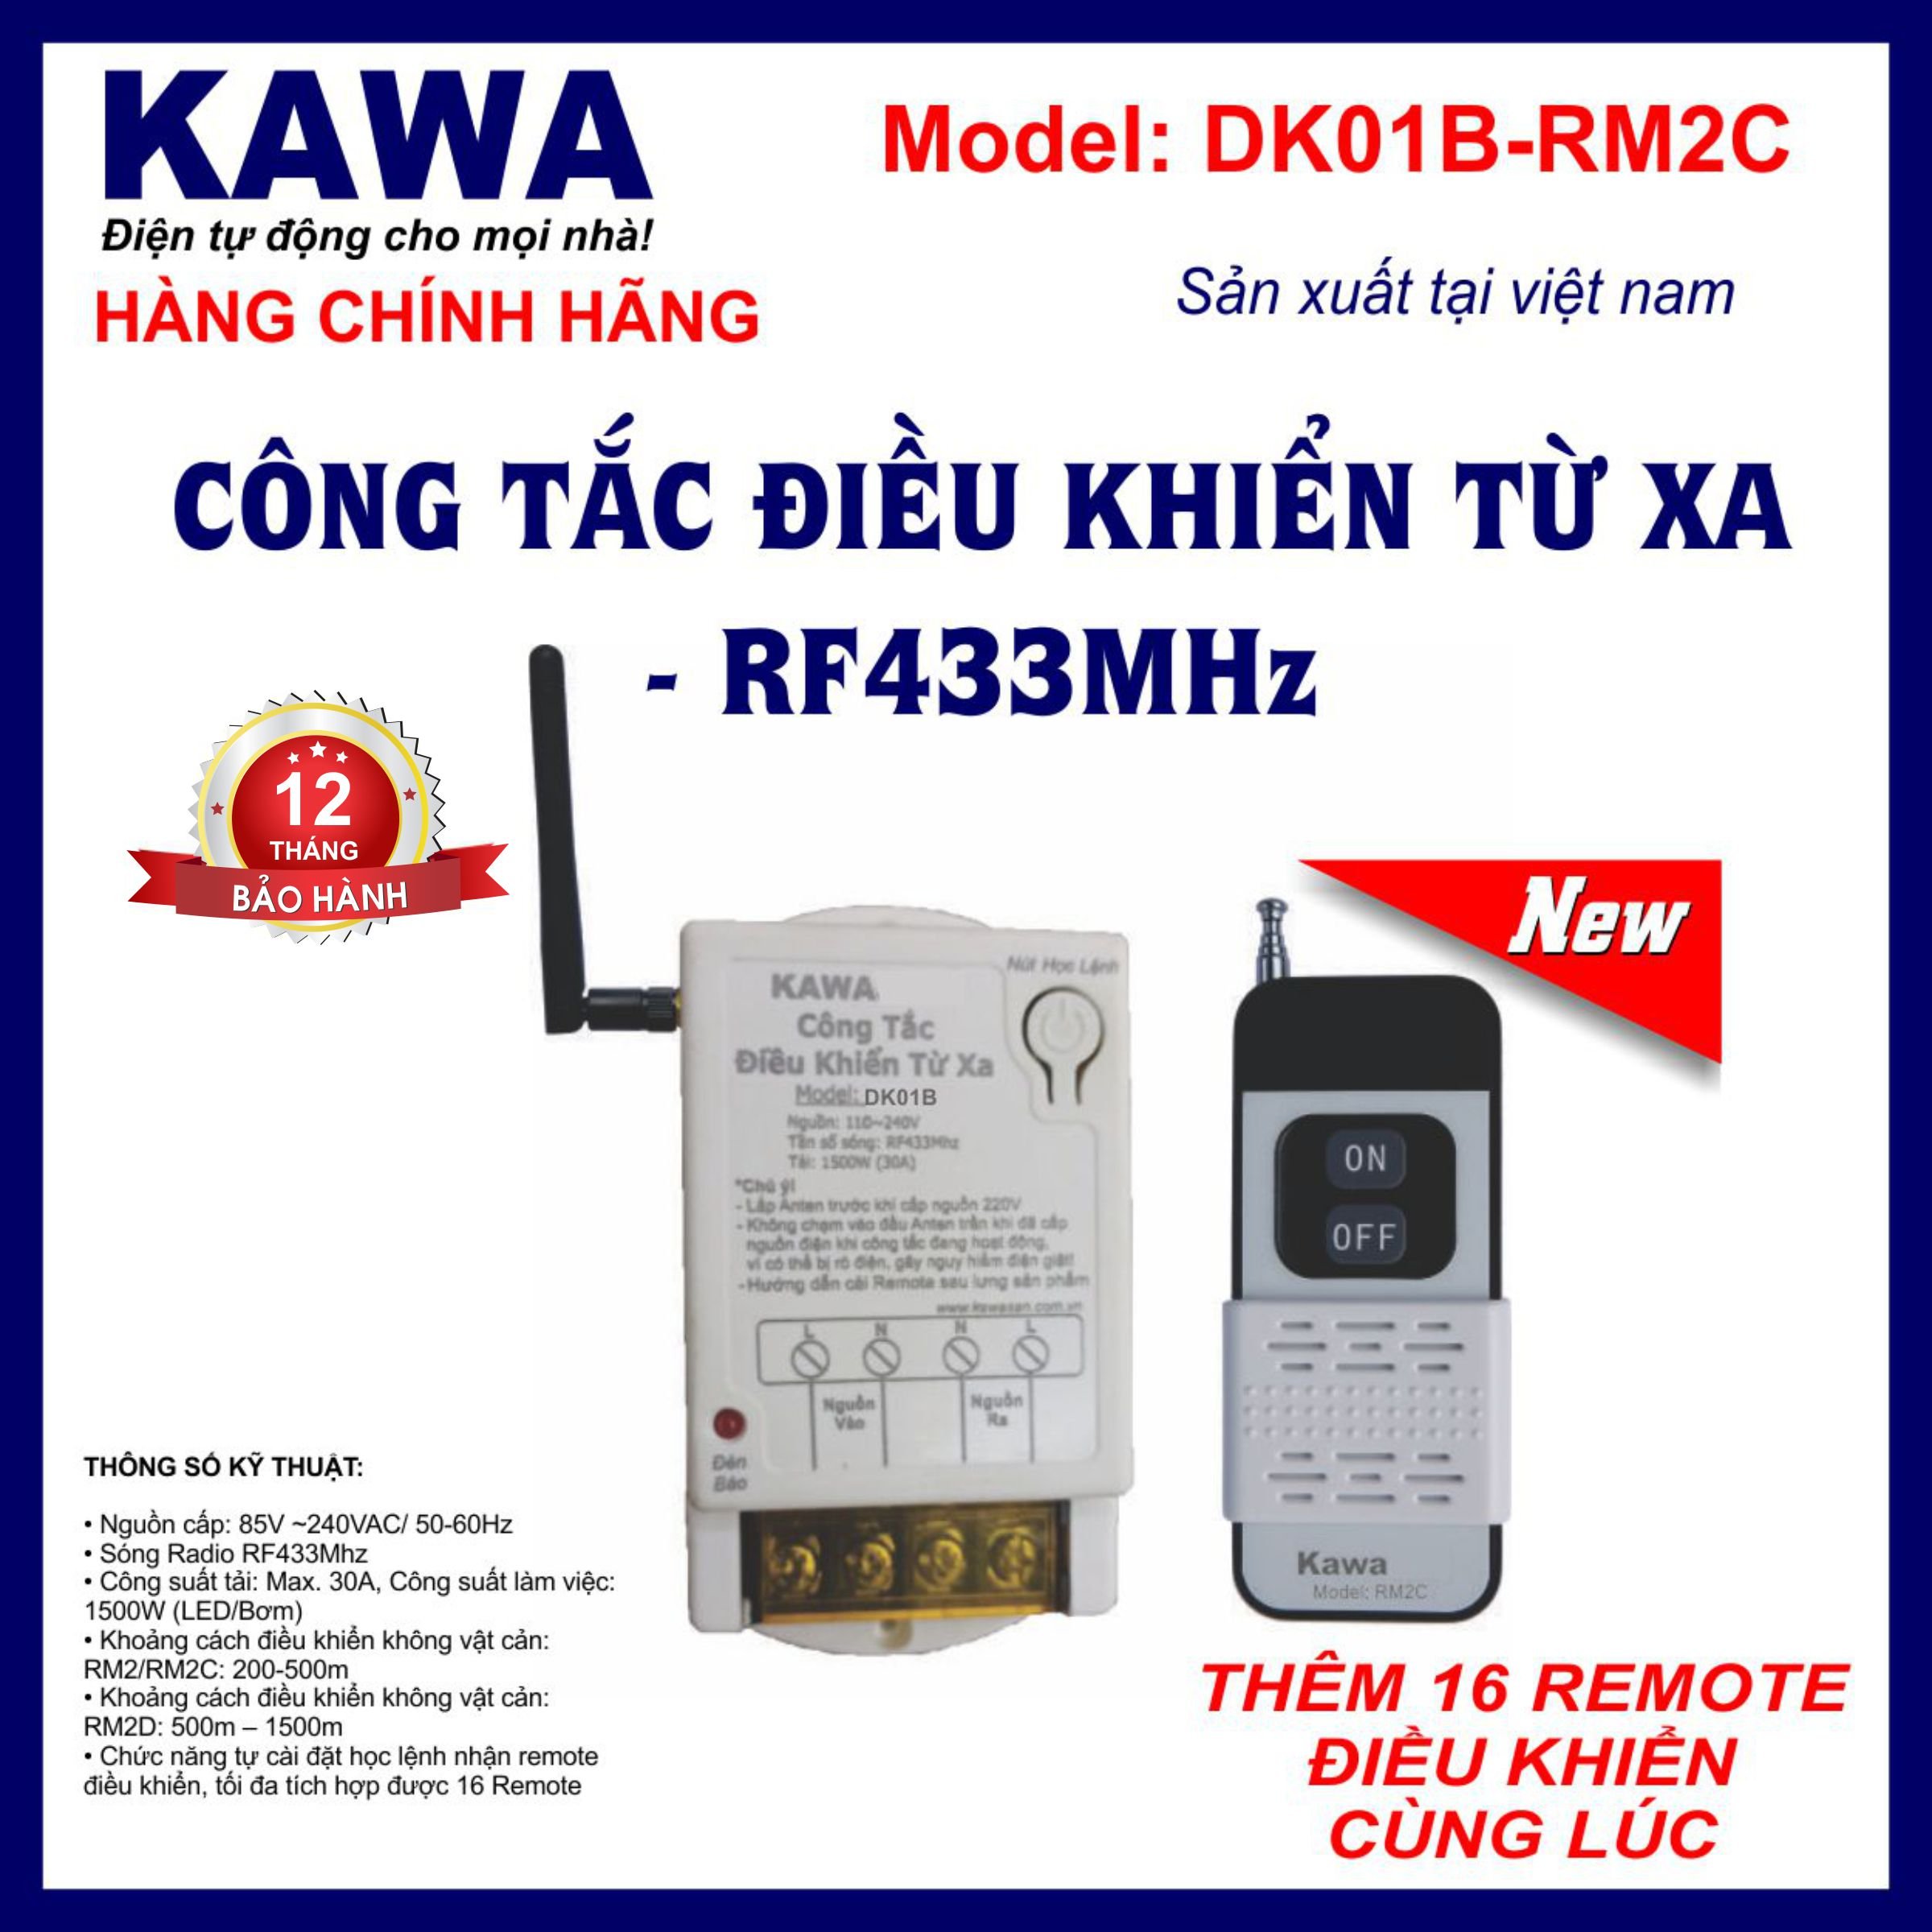 Công tắc điều khiển từ xa DK01B-RM2C